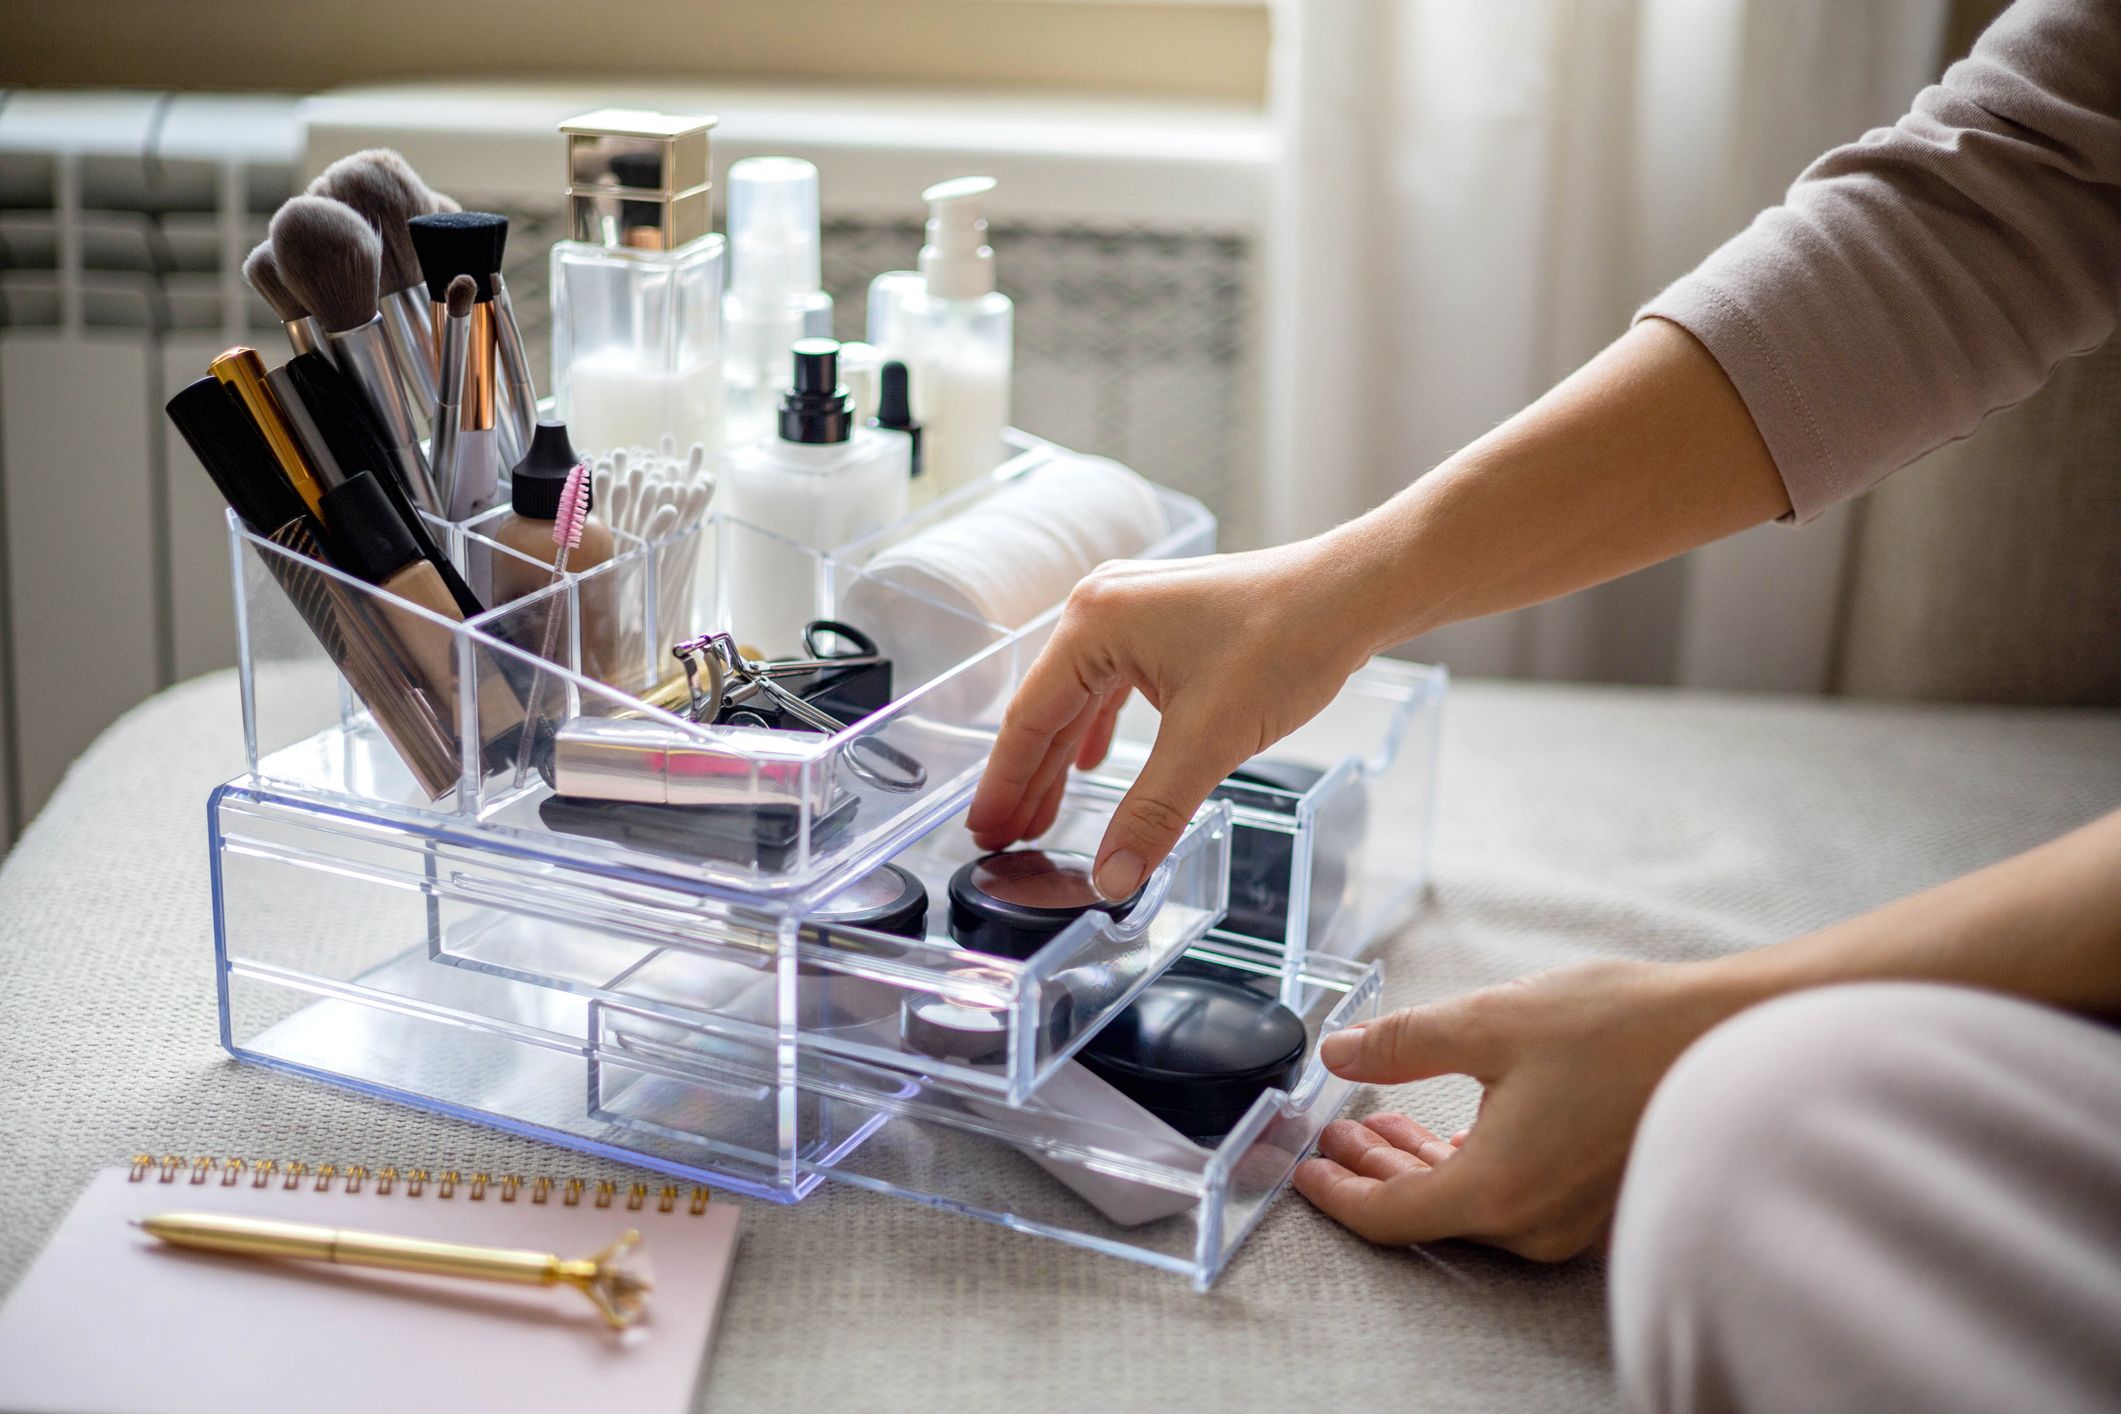 Acrylic Cosmetic Makeup Organizer Jewelry Box Storage Set - 7